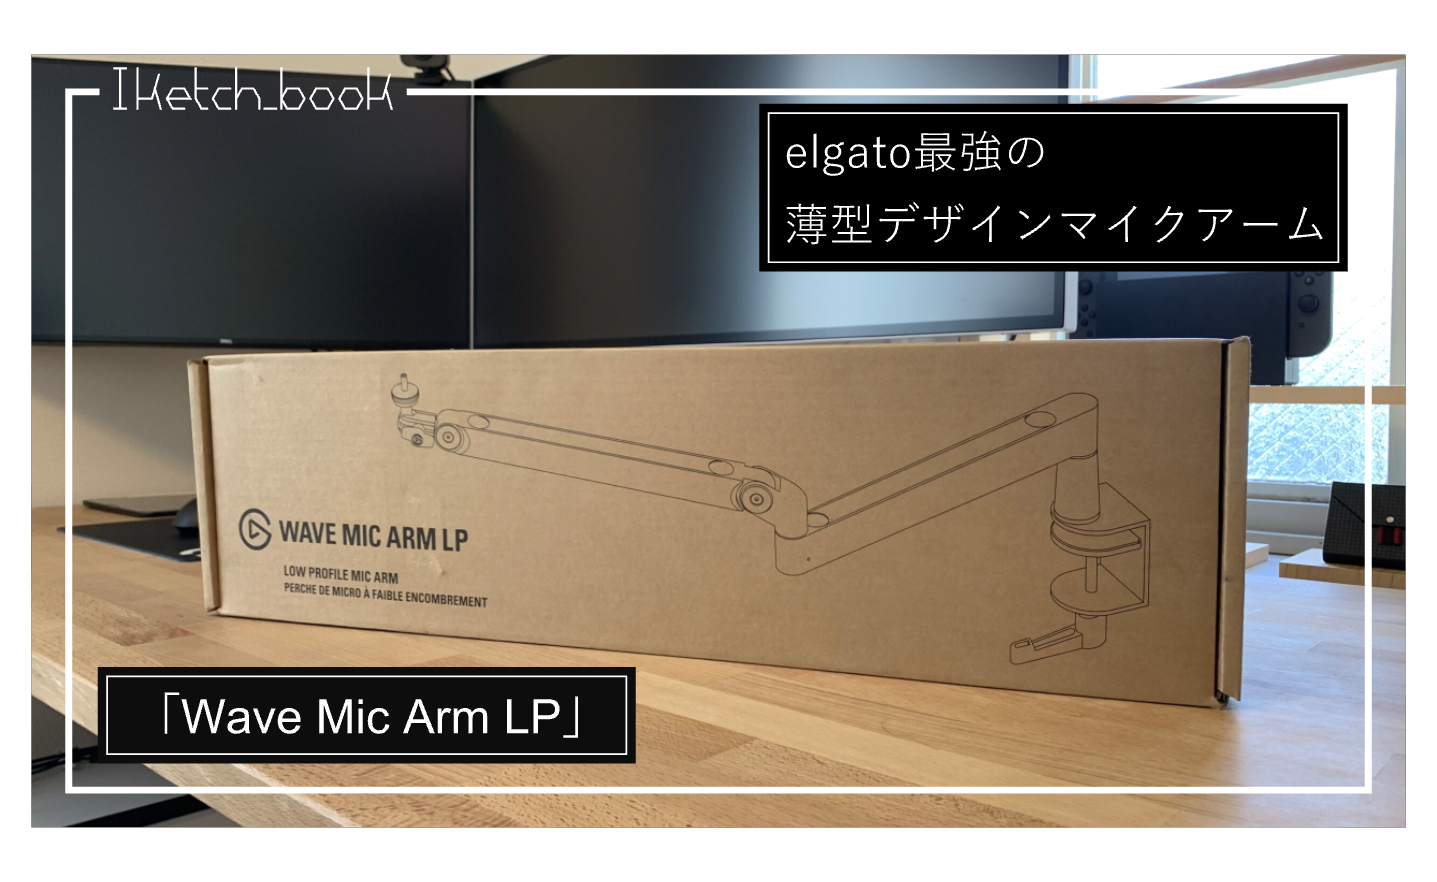 豪華で新しい Elgato Wave Mic Arm LP 薄型デザインマイクアーム 配信